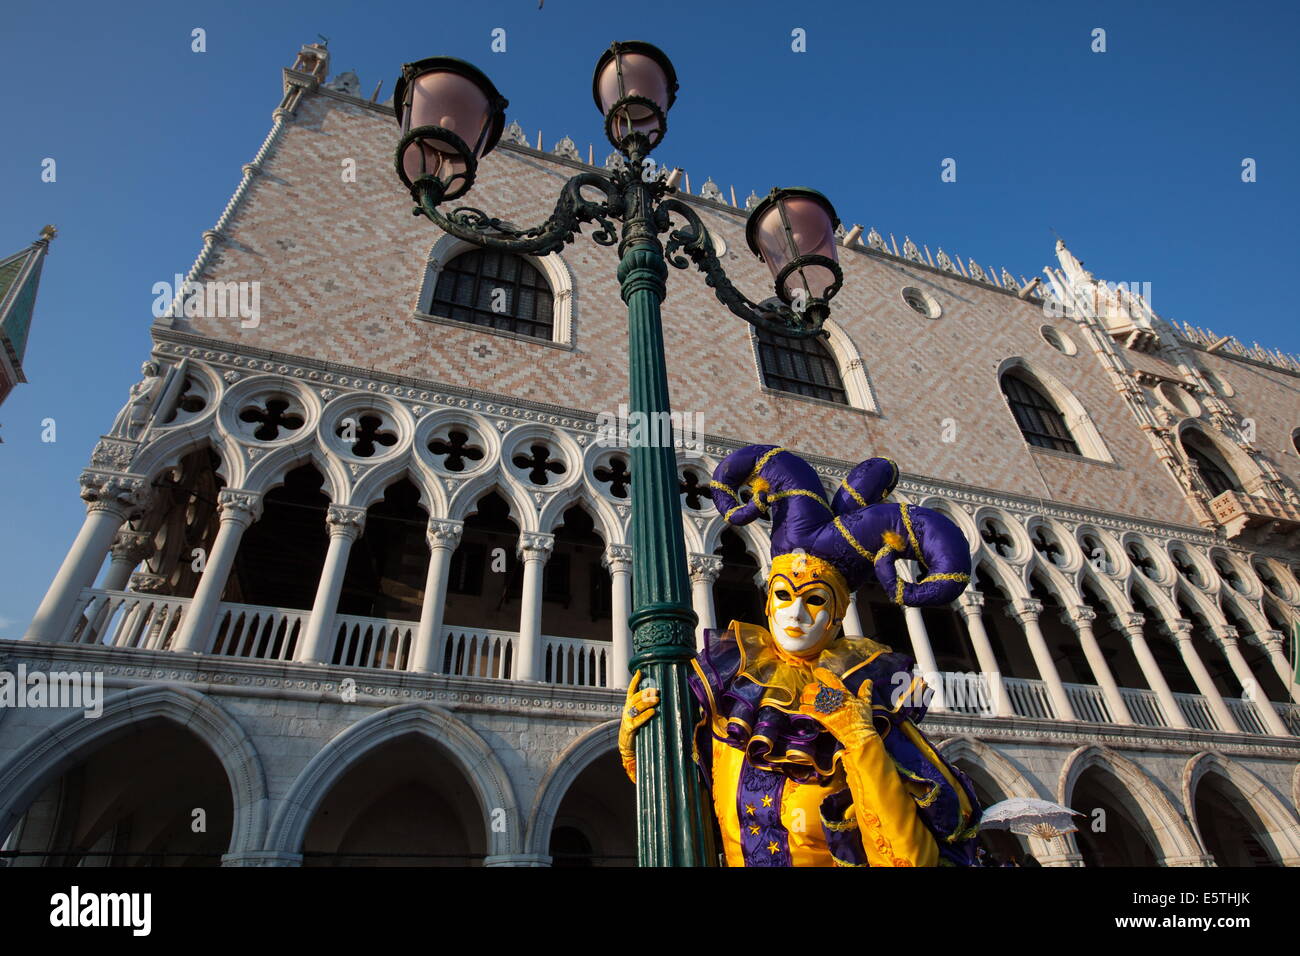 Masques et costumes du Carnaval de Venise durant le carnaval, la Place Saint Marc, Venise, UNESCO World Heritage Site, Vénétie, Italie, Europe Banque D'Images